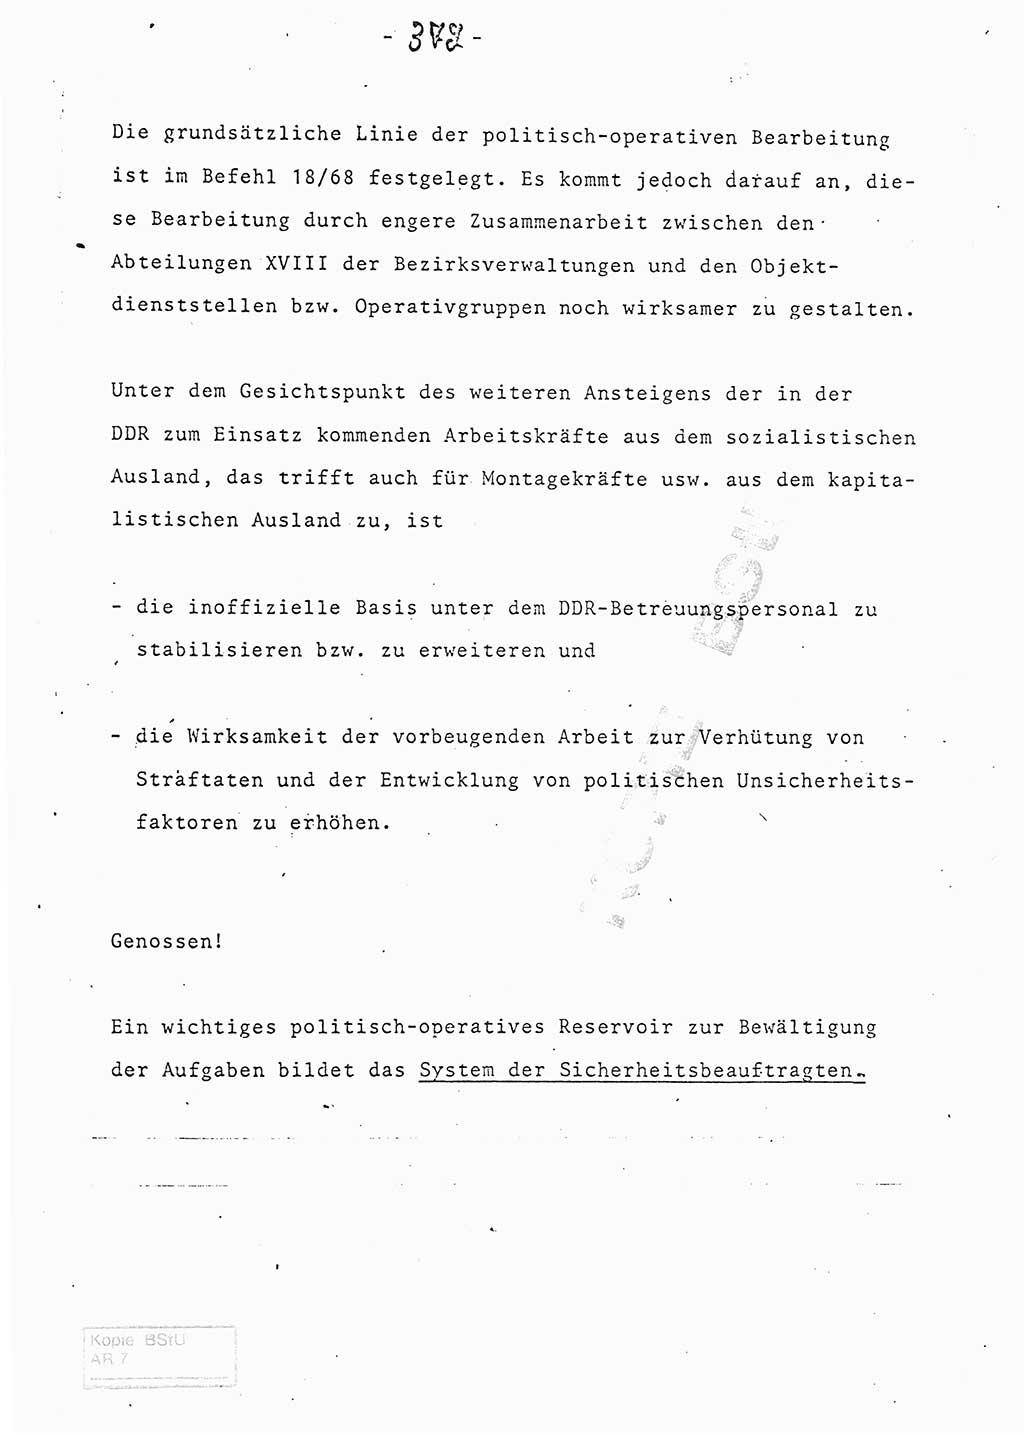 Referat (Entwurf) des Genossen Minister (Generaloberst Erich Mielke) auf der Dienstkonferenz 1972, Ministerium für Staatssicherheit (MfS) [Deutsche Demokratische Republik (DDR)], Der Minister, Geheime Verschlußsache (GVS) 008-150/72, Berlin 25.2.1972, Seite 372 (Ref. Entw. DK MfS DDR Min. GVS 008-150/72 1972, S. 372)